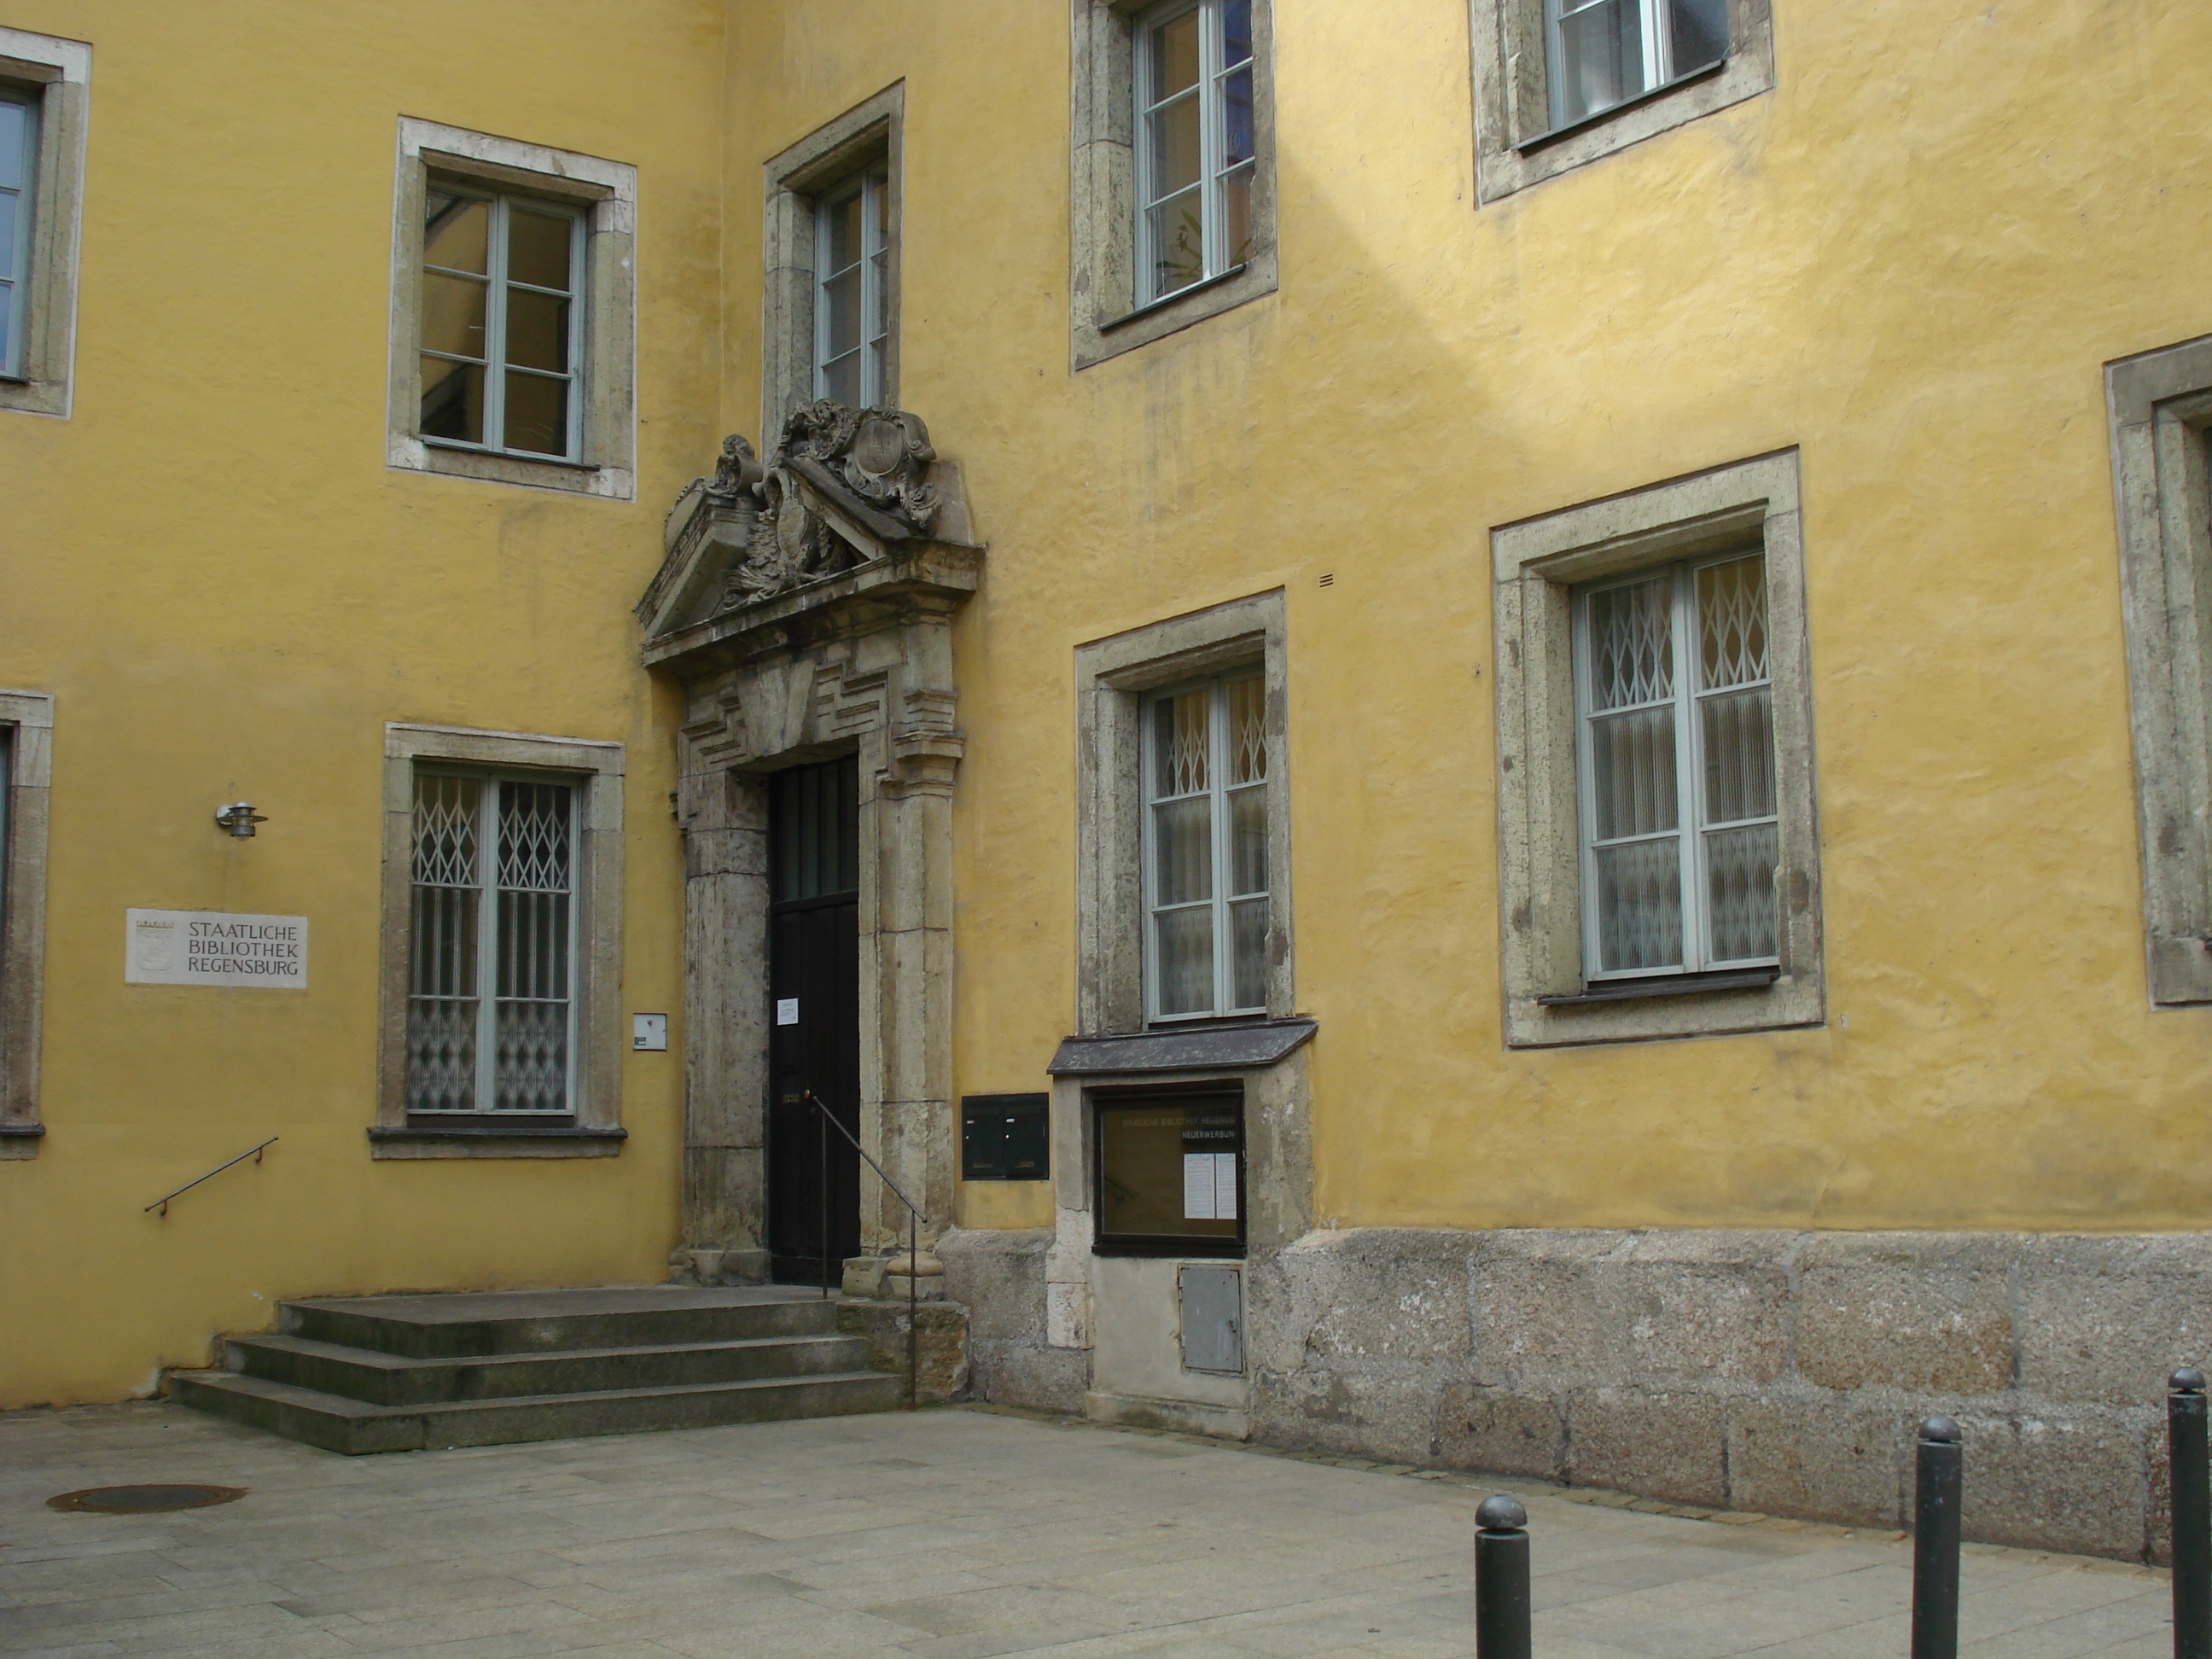 Bild 1 Staatliche Bibliothek Regensburg in Regensburg